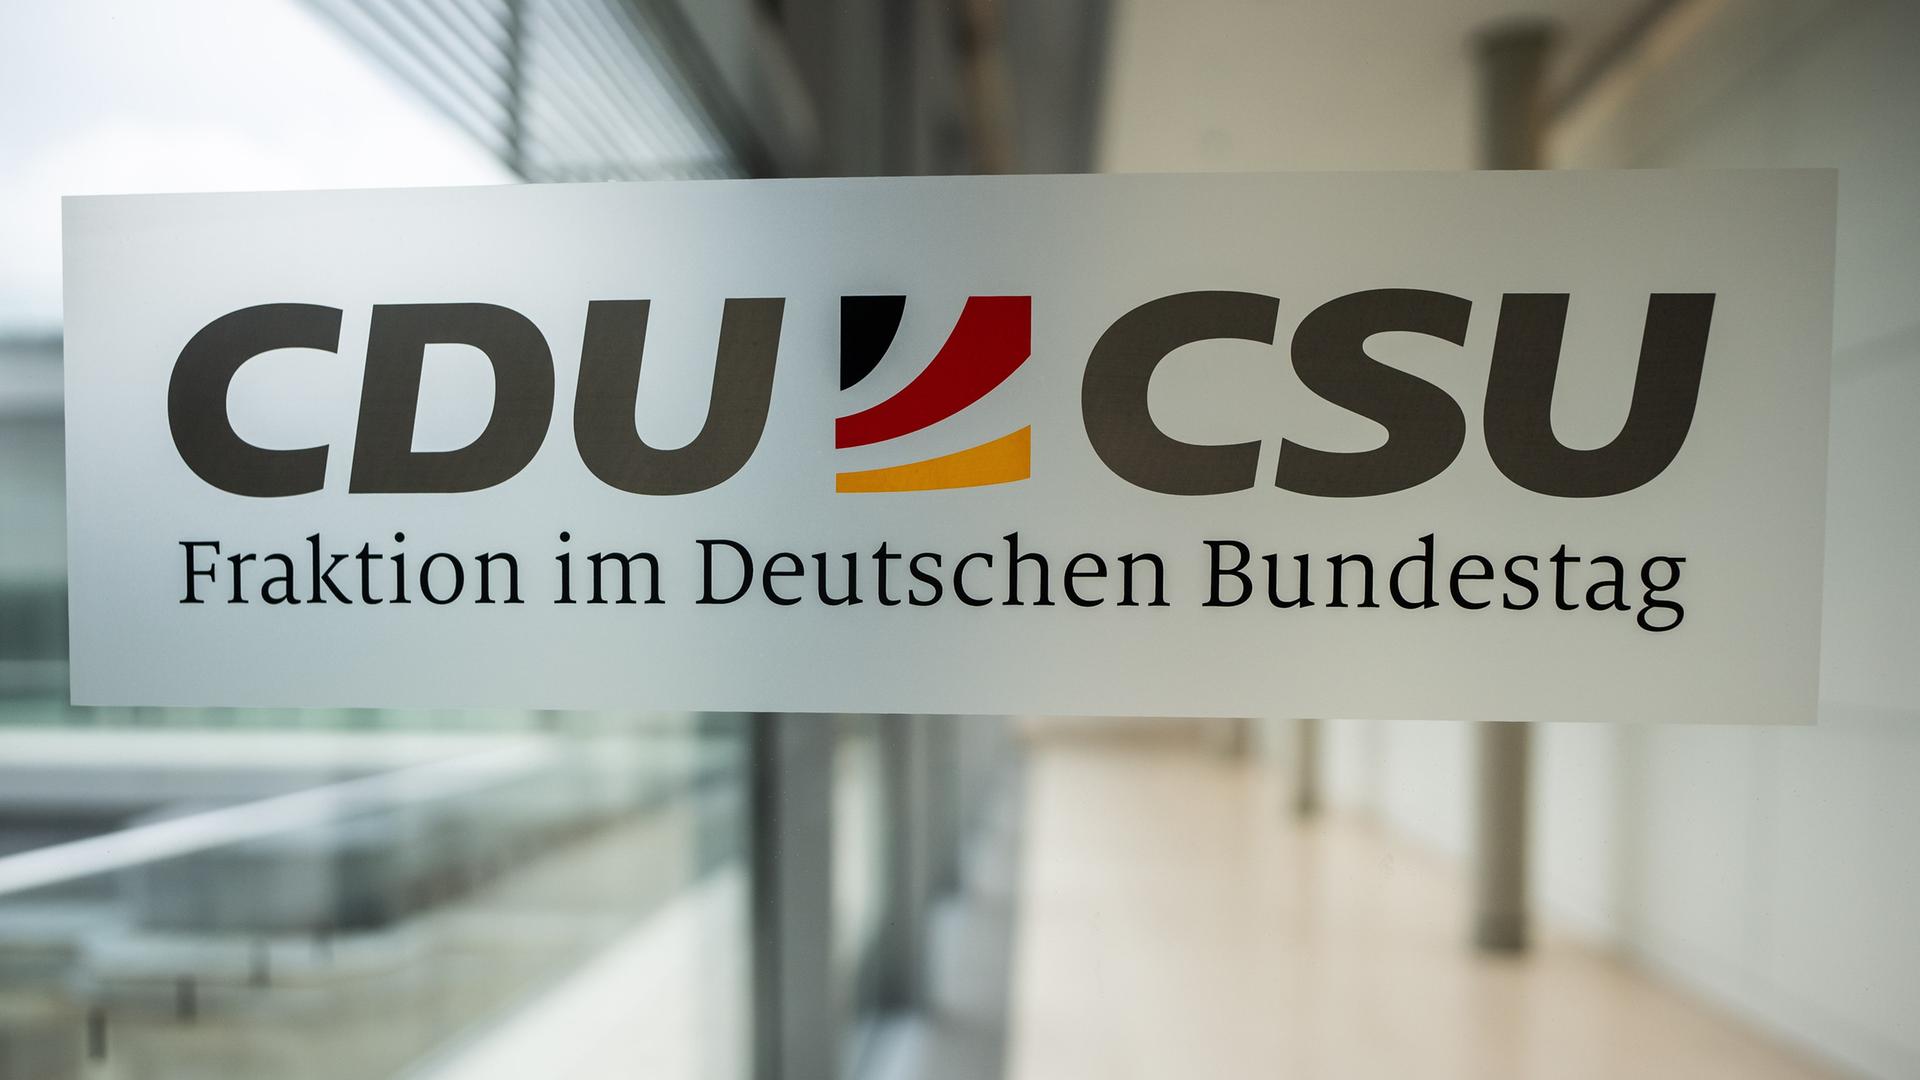 Das Logo der CDU/CSU Fraktion im Deutschen Bundestag.